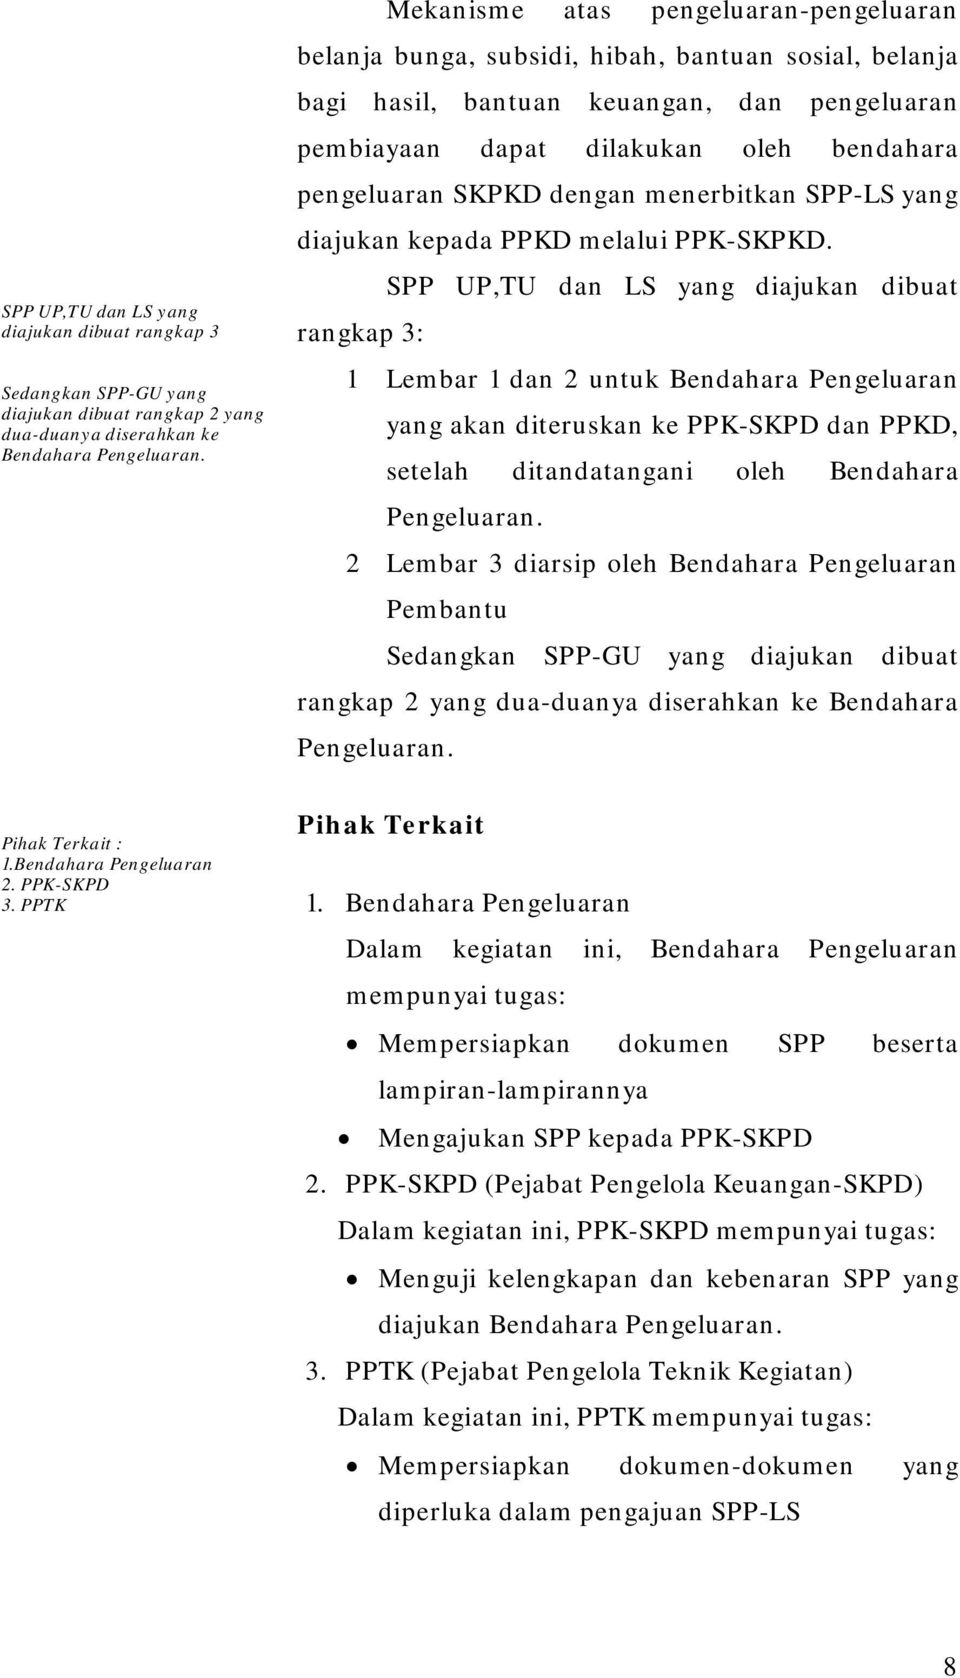 dengan menerbitkan SPP-LS yang diajukan kepada PPKD melalui PPK-SKPKD.